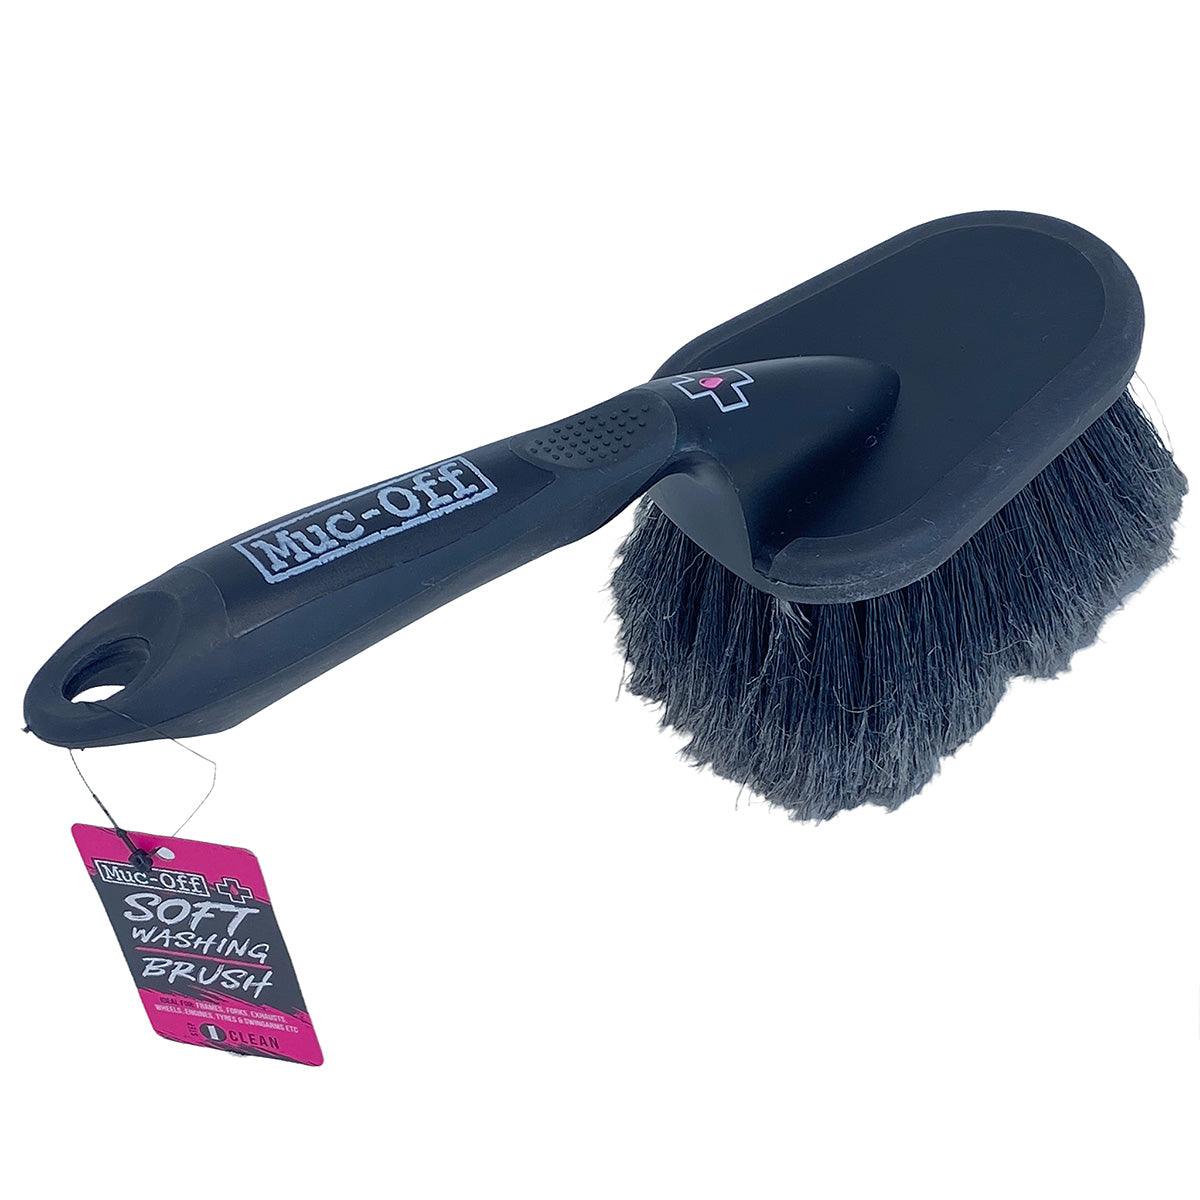 Muc-Off Soft Premium Washing Brush - The Motocrosshut